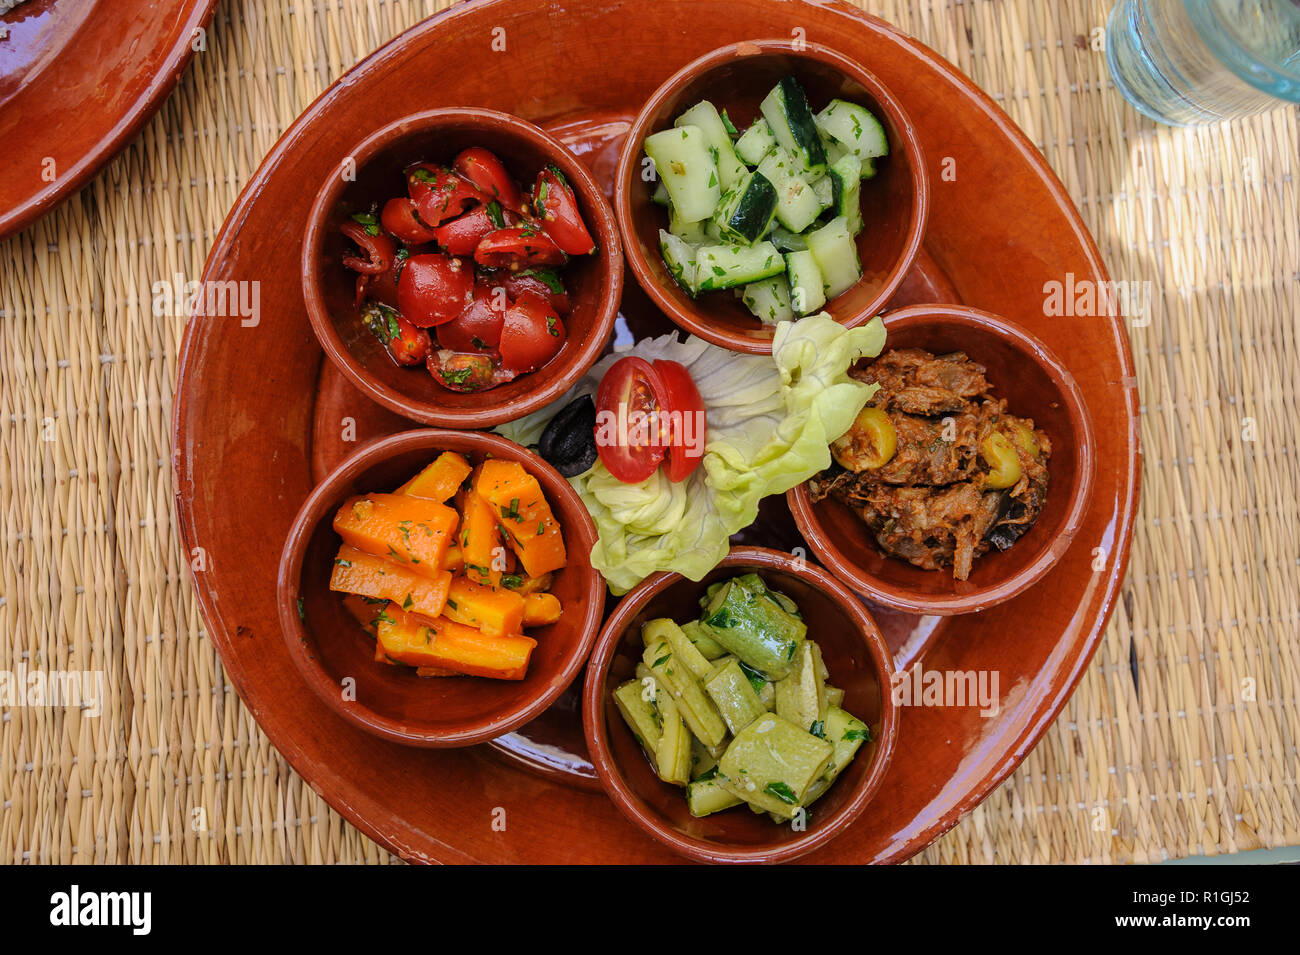 18-04-11. Marrakech, Marocco. Marocchino tipico insalata di verdure e verdure sottaceto. Foto © Simon Grosset / Q Fotografia Foto Stock